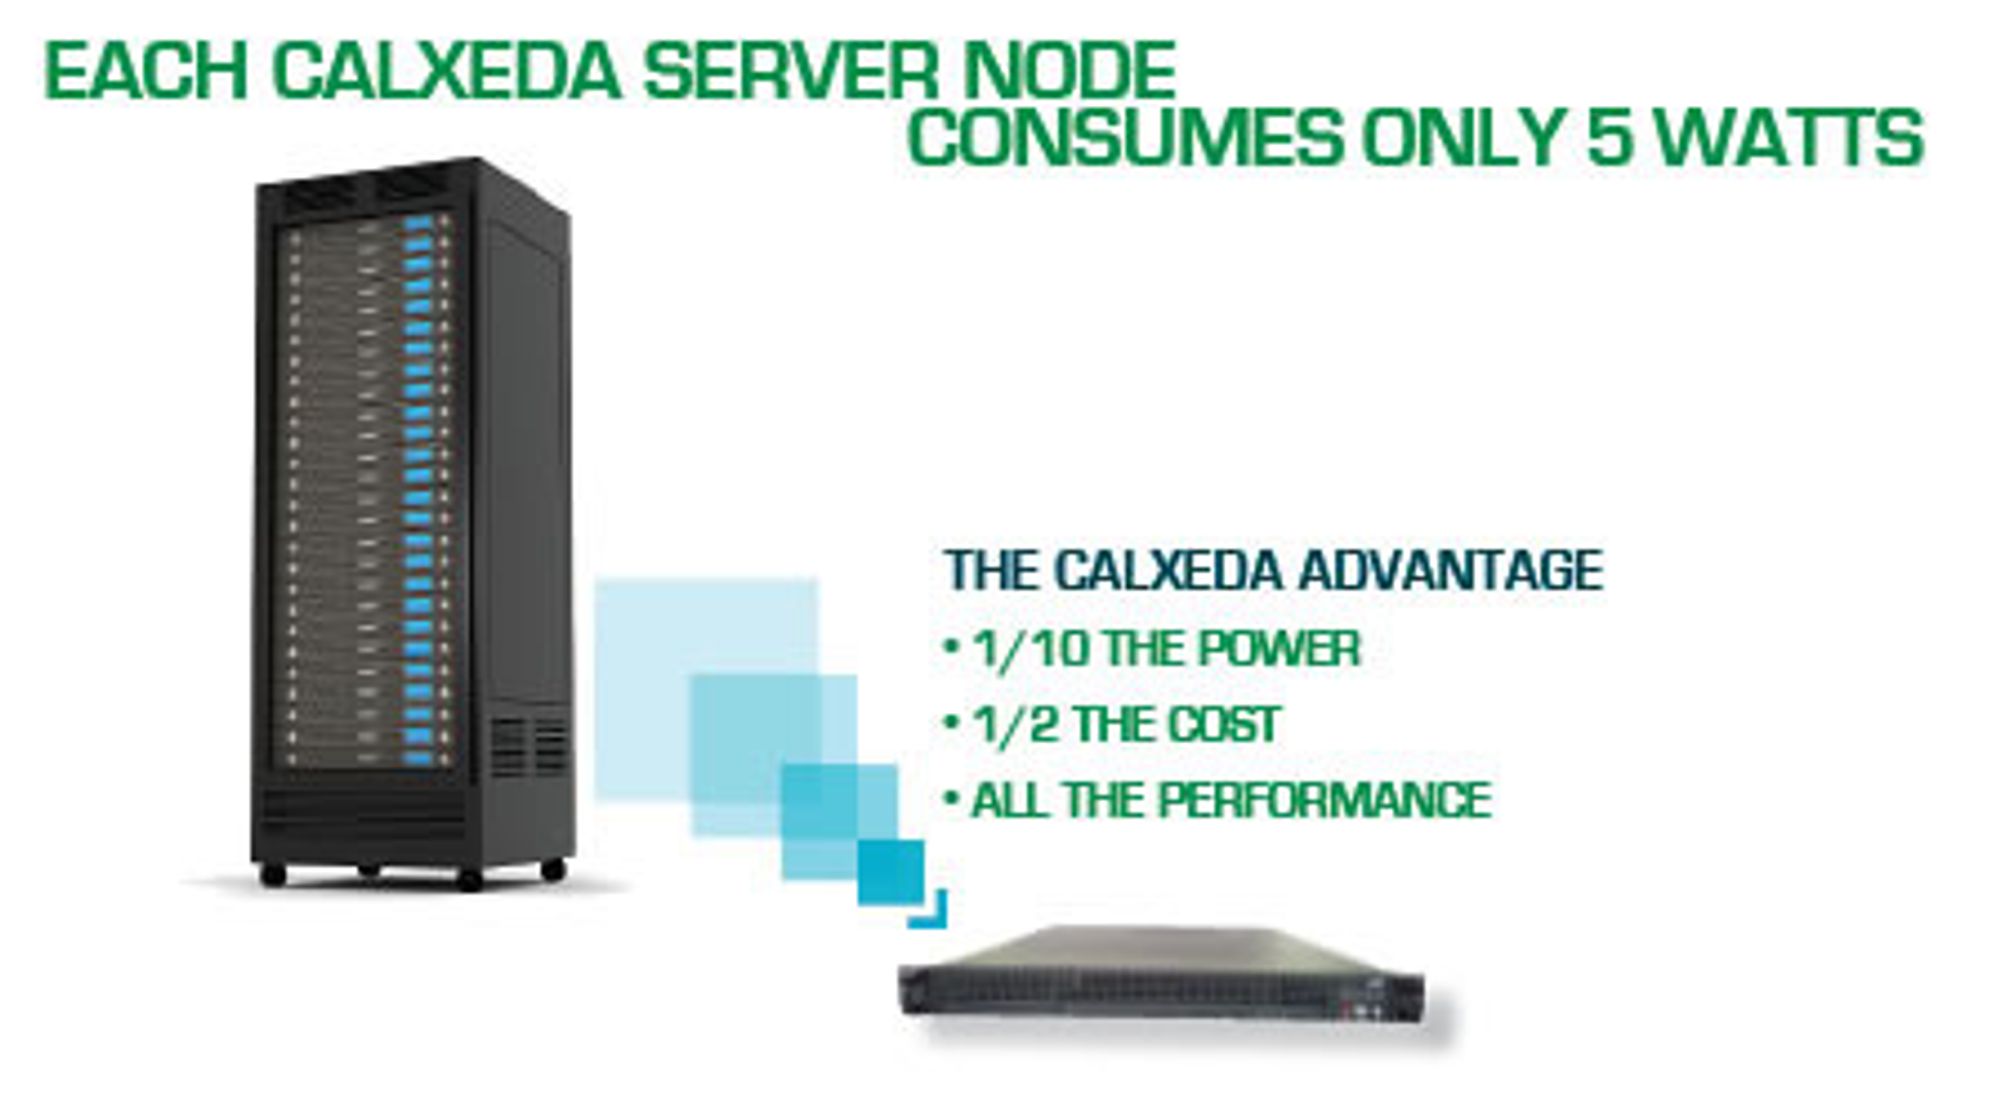 Slik illustrerer Calxeda fordelene med en ny ARM-basert serverarkitektur, med bedre balanse mellom beregning, minne, nettverk og lagring. 2U-enheten nederst til høyre består av 120 noder, hver med en firekjernet ARM-prosessor.